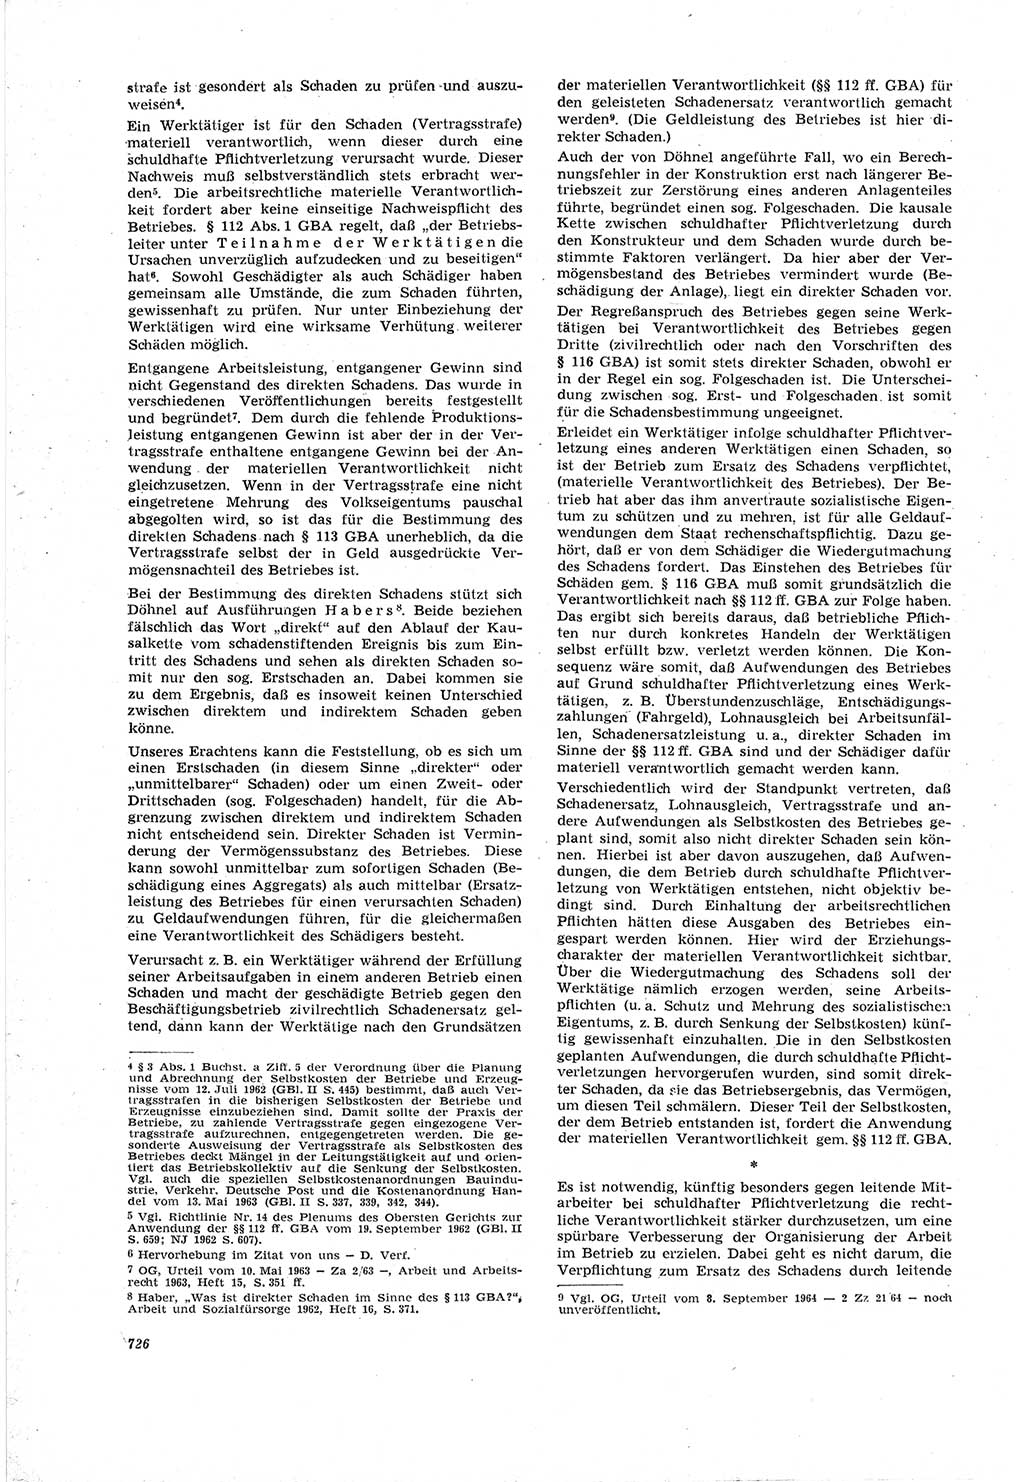 Neue Justiz (NJ), Zeitschrift für Recht und Rechtswissenschaft [Deutsche Demokratische Republik (DDR)], 18. Jahrgang 1964, Seite 726 (NJ DDR 1964, S. 726)